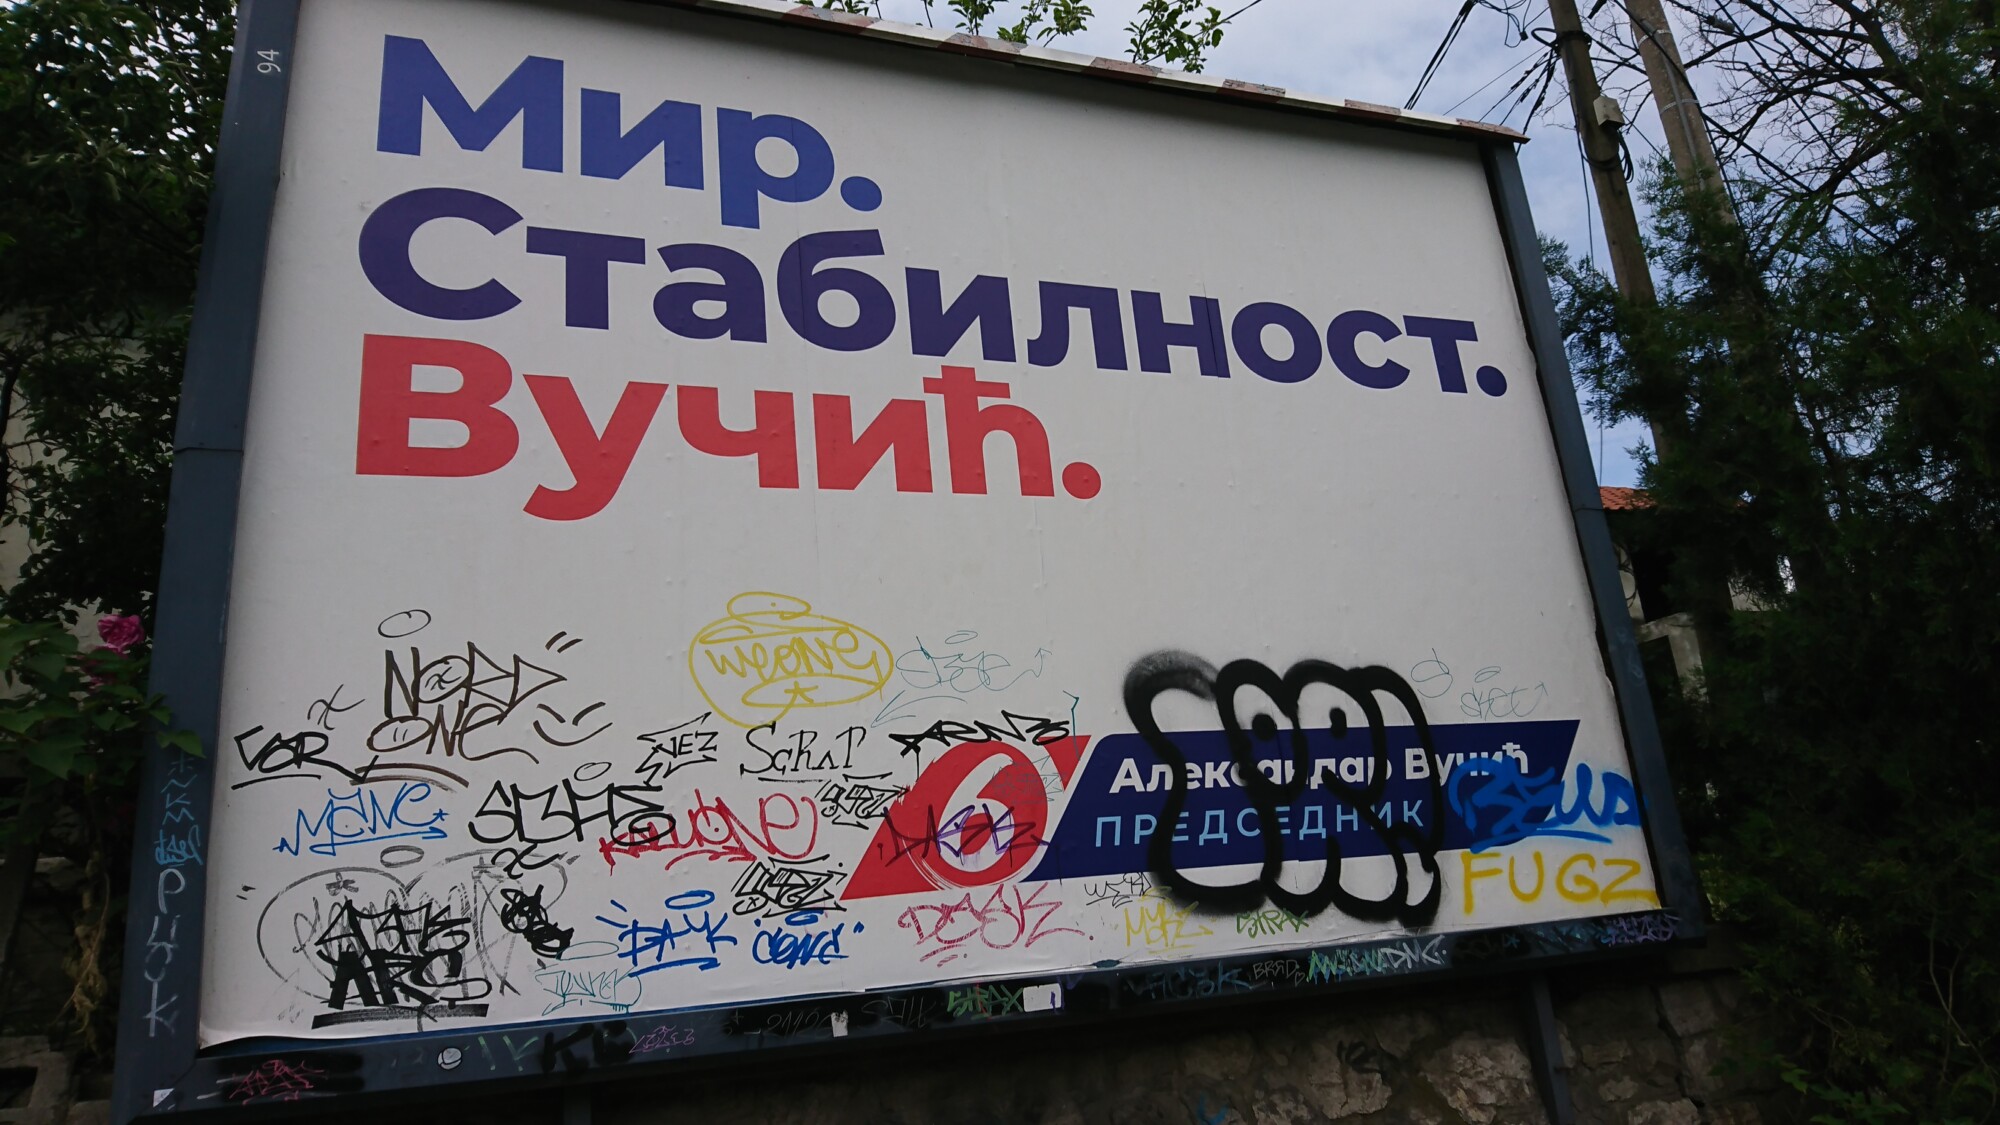 Campaign billboard